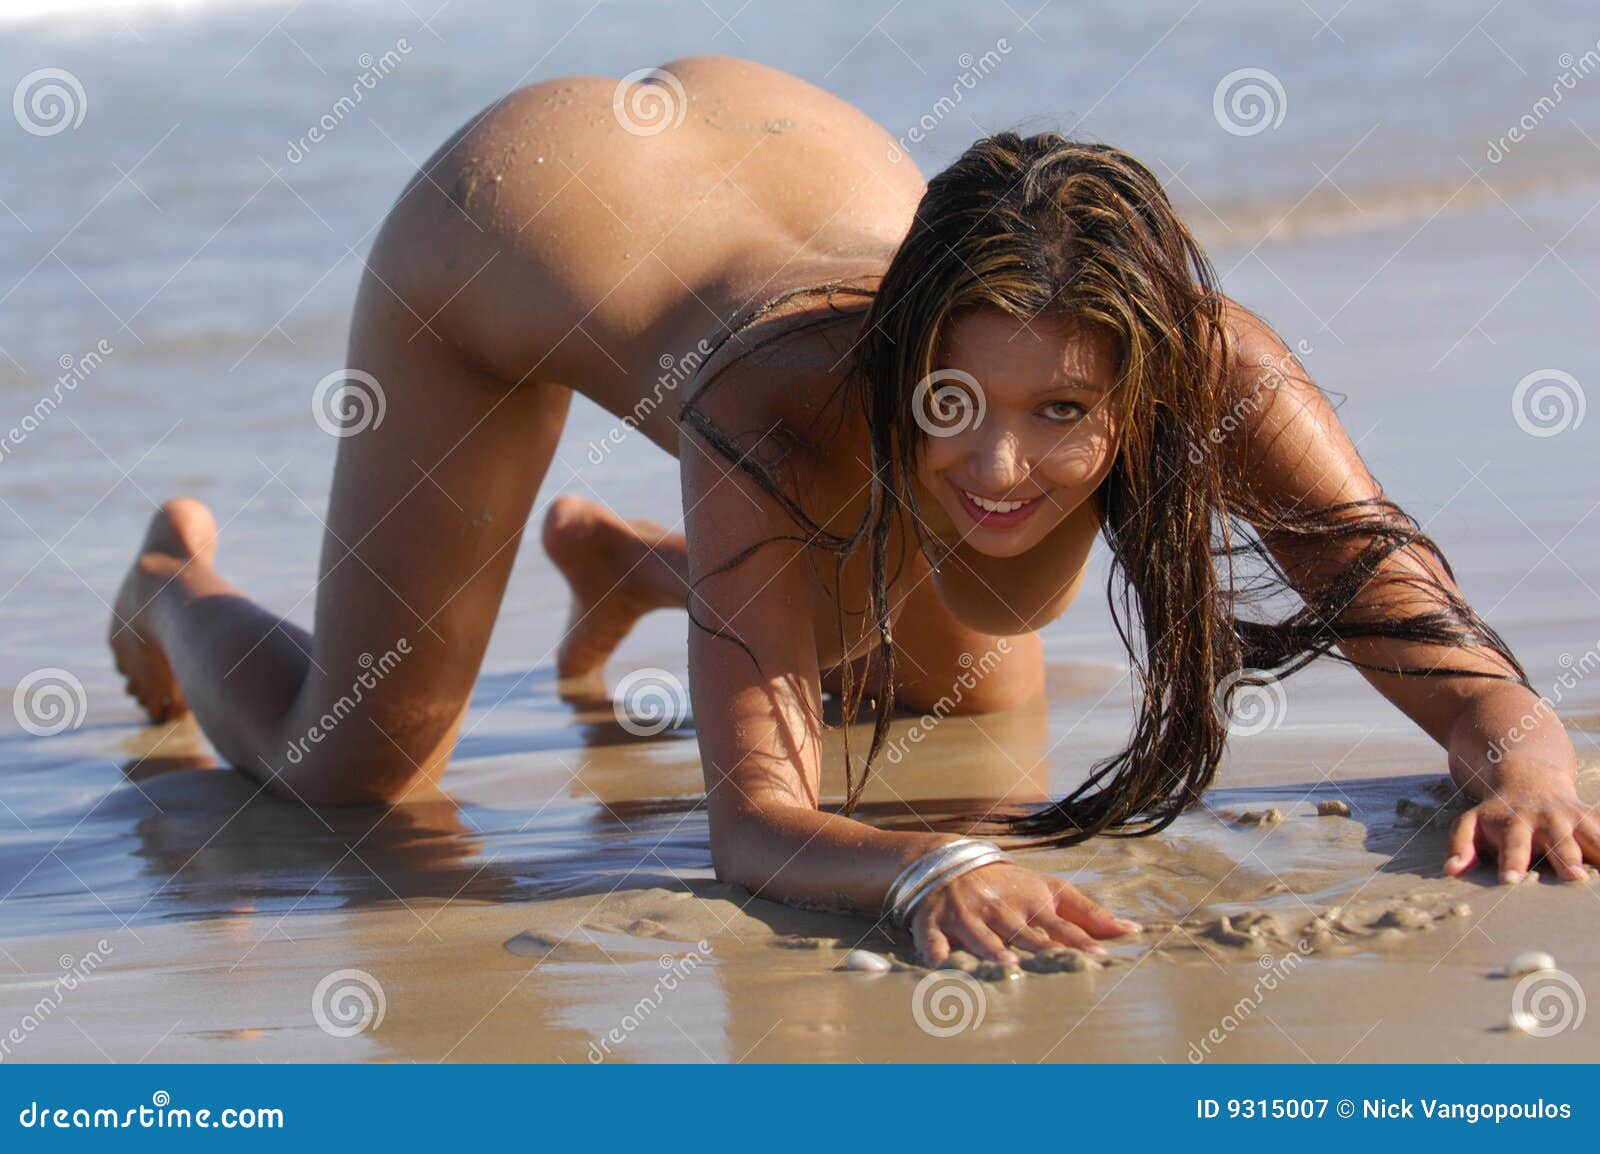 darlene markowski share hot women nude beach photos